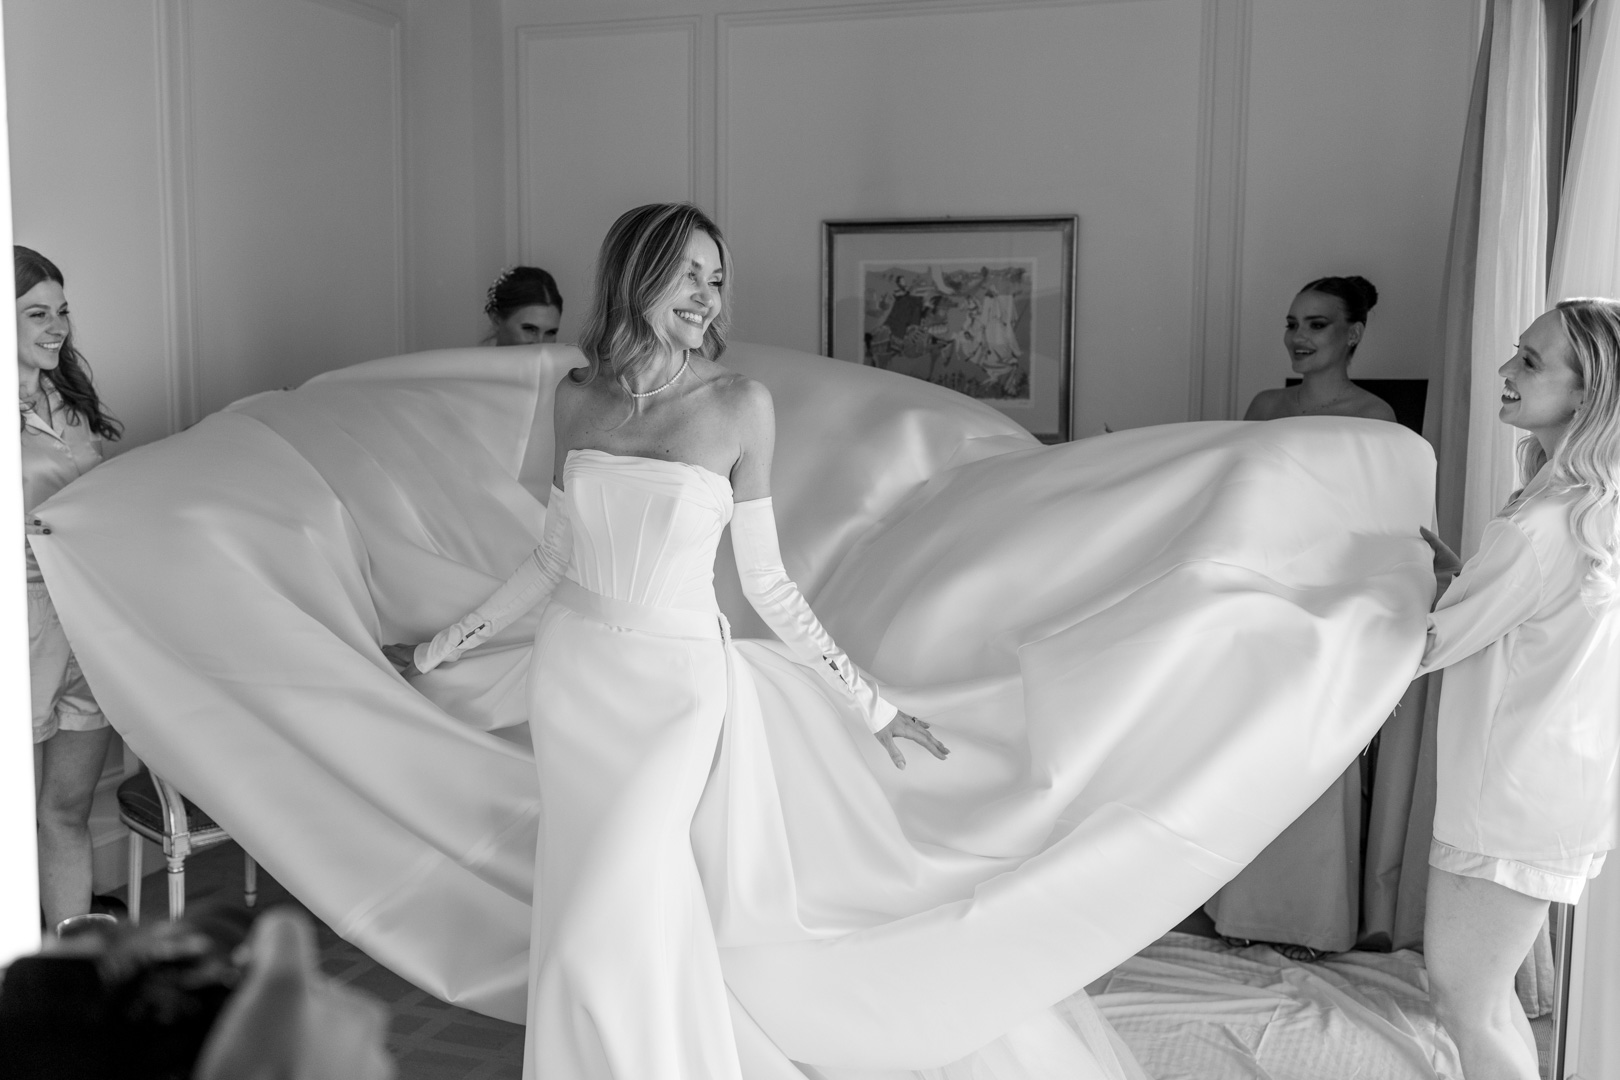 Casamiento, bride, getting ready, novia, Alvear palace Hotel, Buenos Aires, Argentina, 54 Fotografía. Fotógrafos de bodas.
